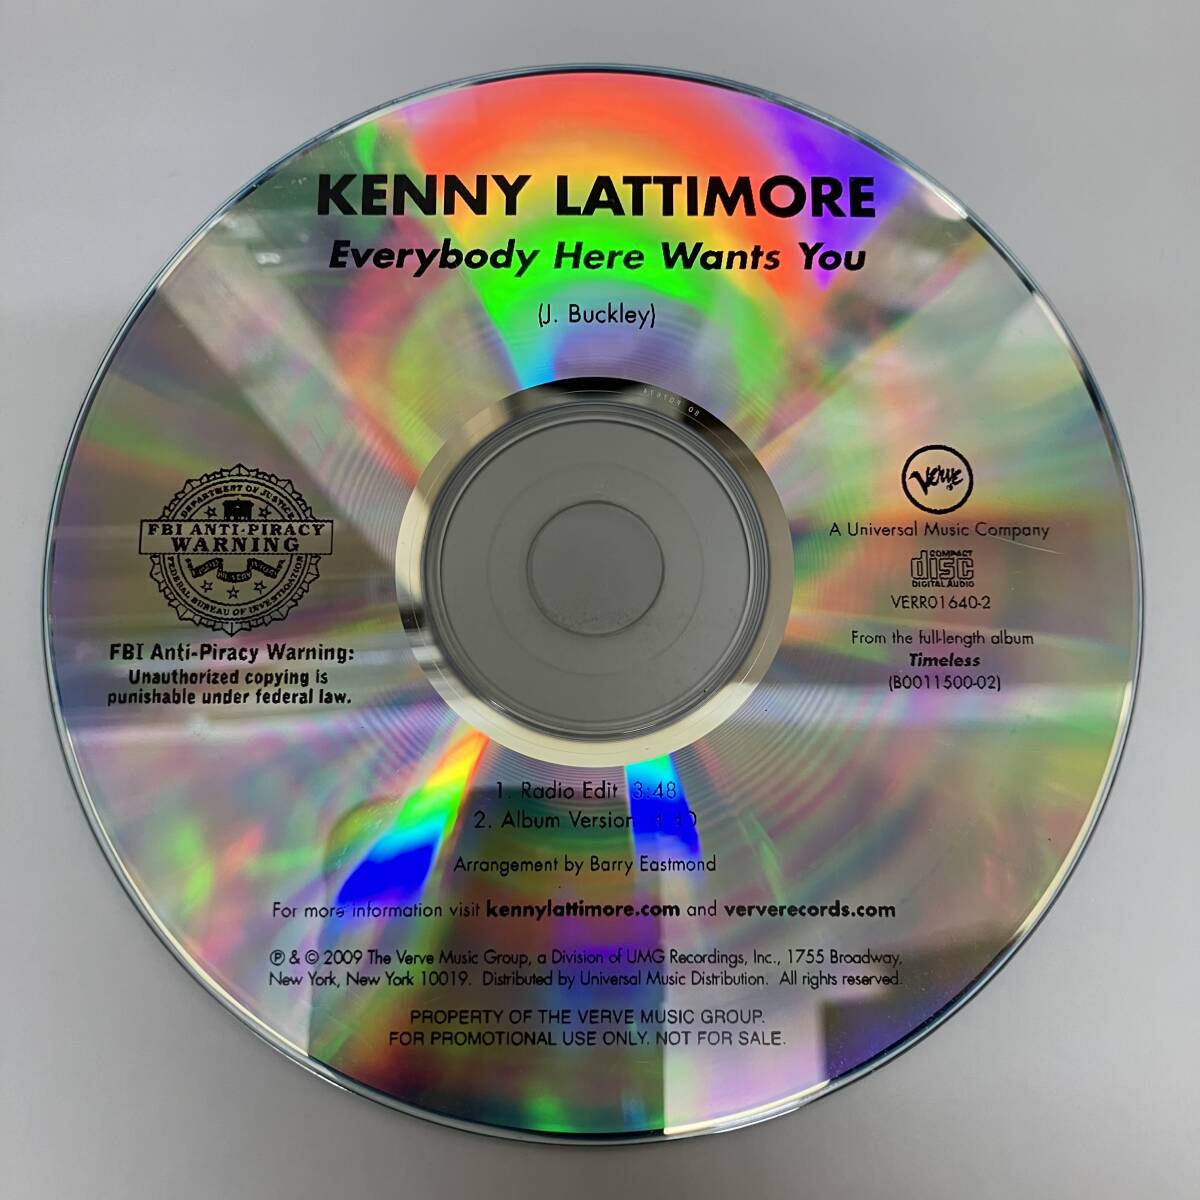 裸40 HIPHOP,R&B KENNY LATTIMORE - EVERYBODY HERE WANTS YOU シングル CD 中古品_画像1